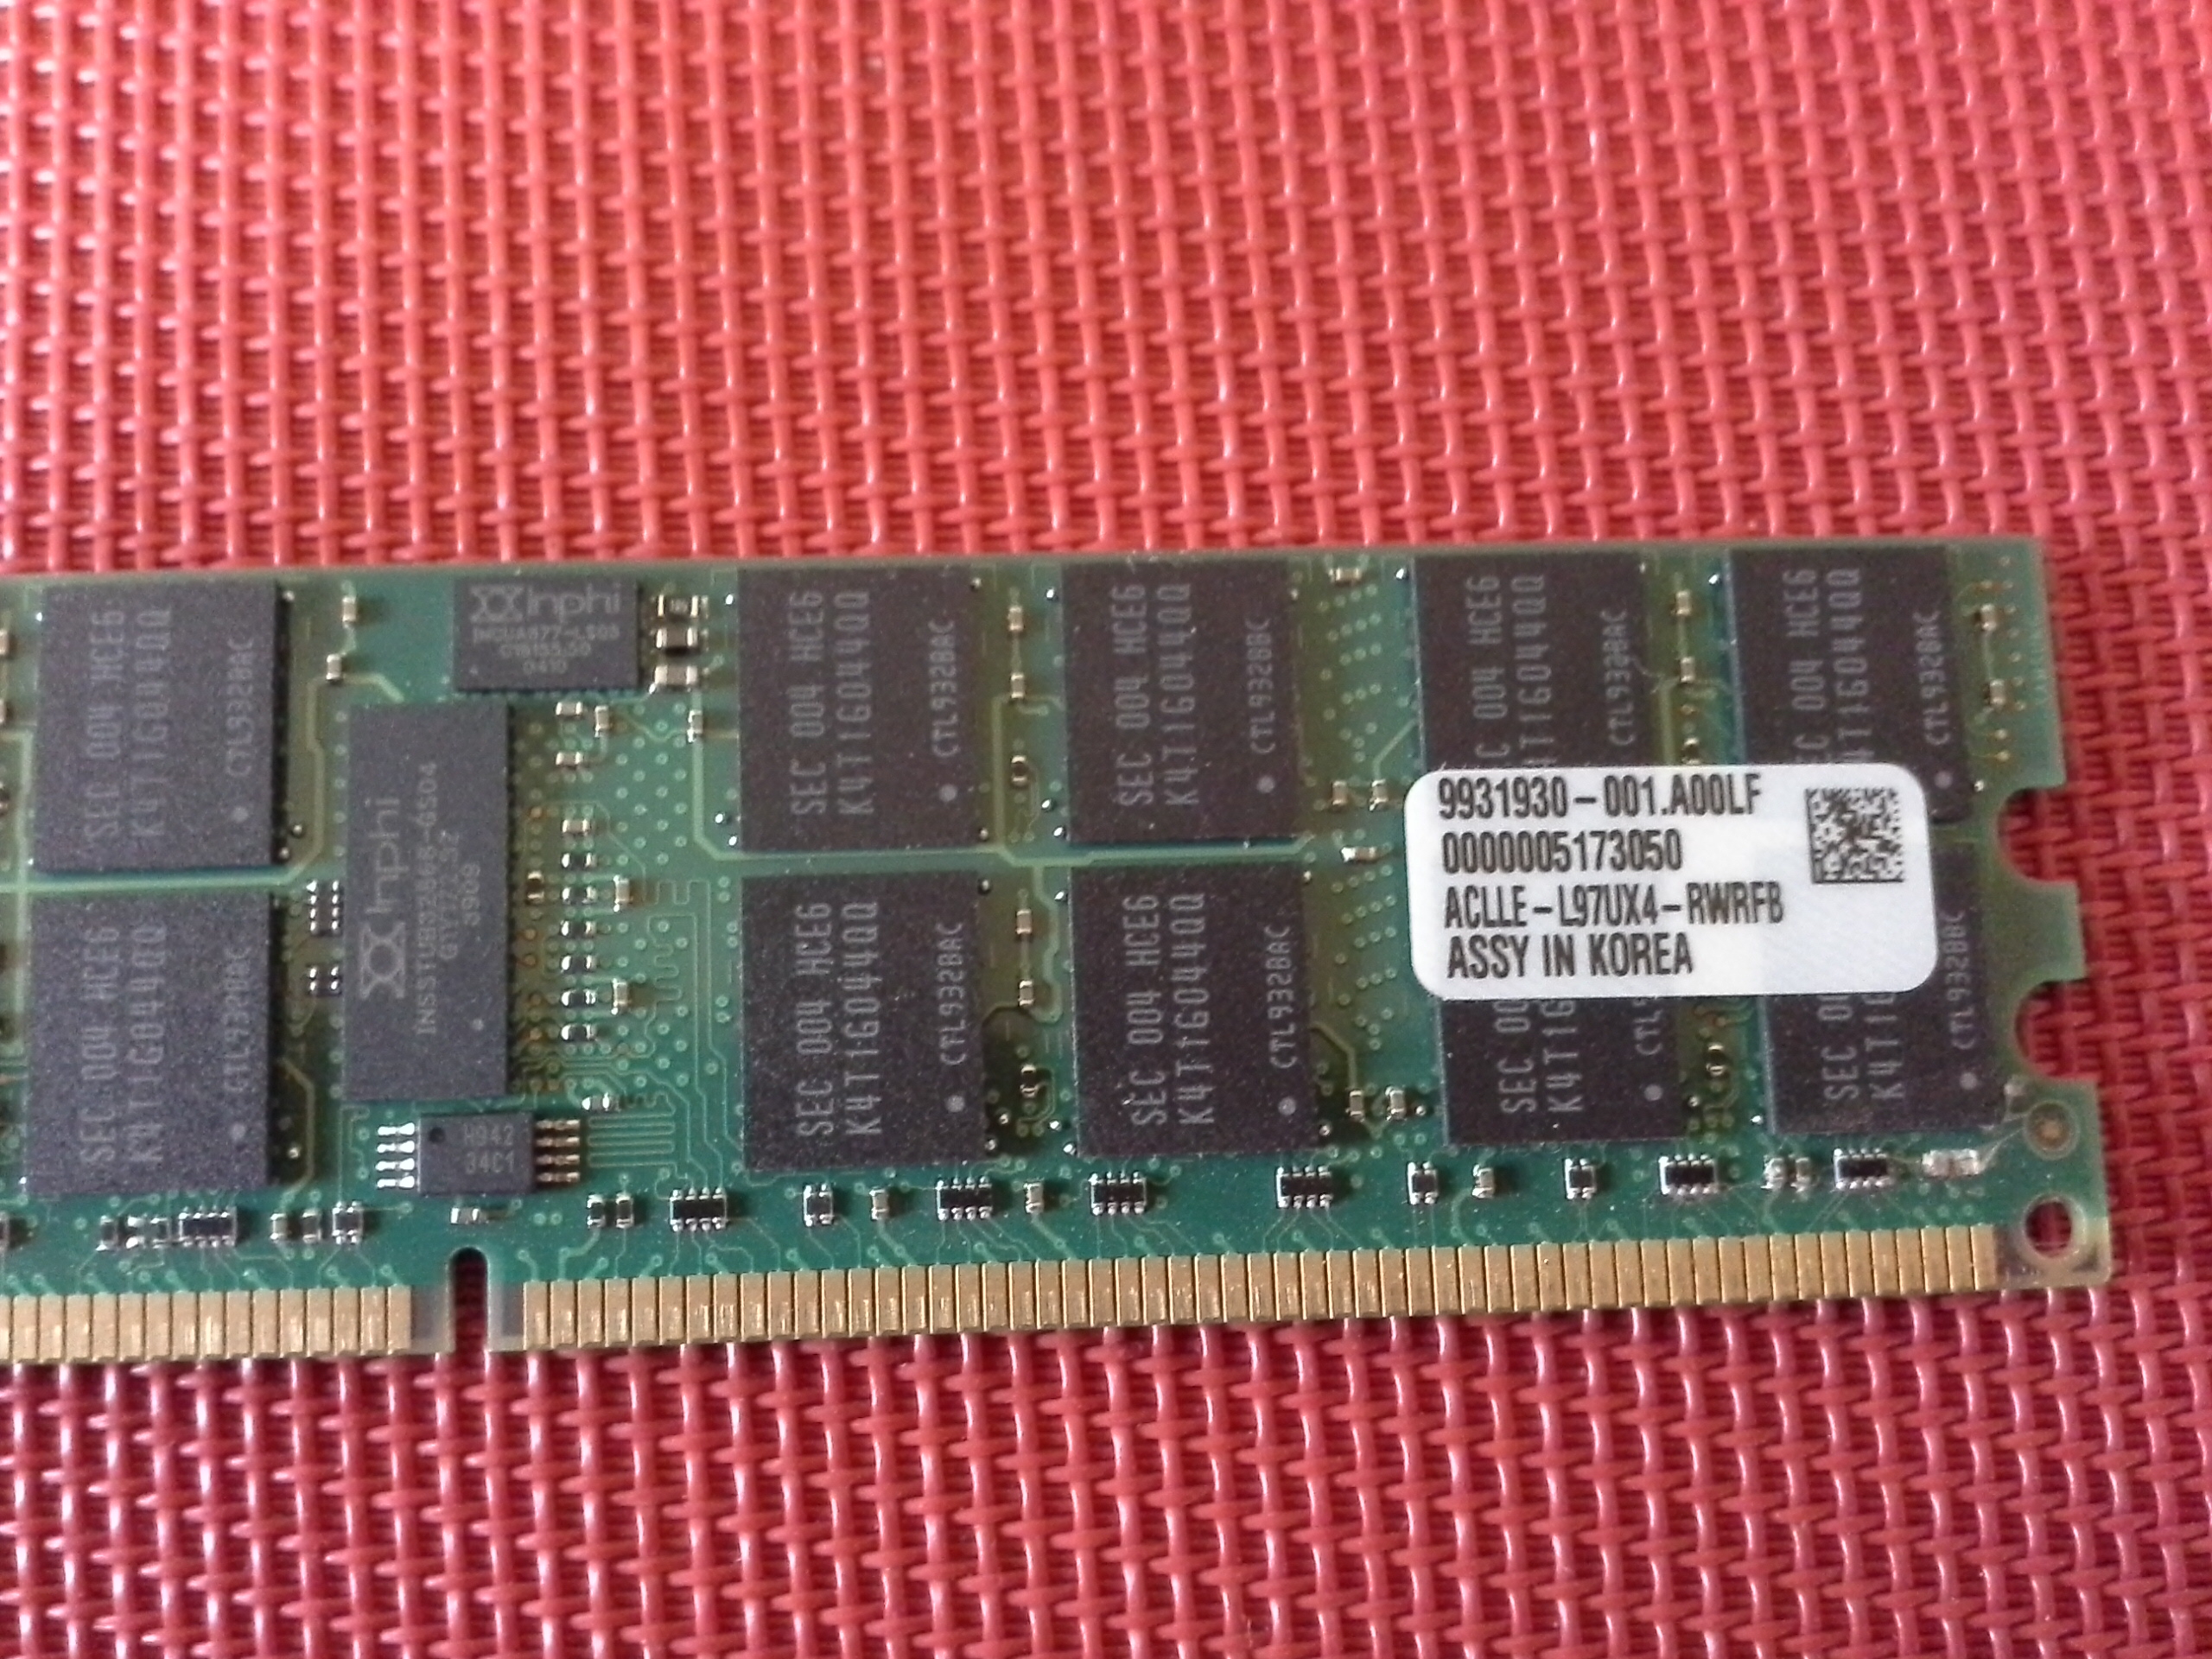 Kingston KTH-XW8200 / 4G-4GB DDR2 SDRAM Speicher-Modul